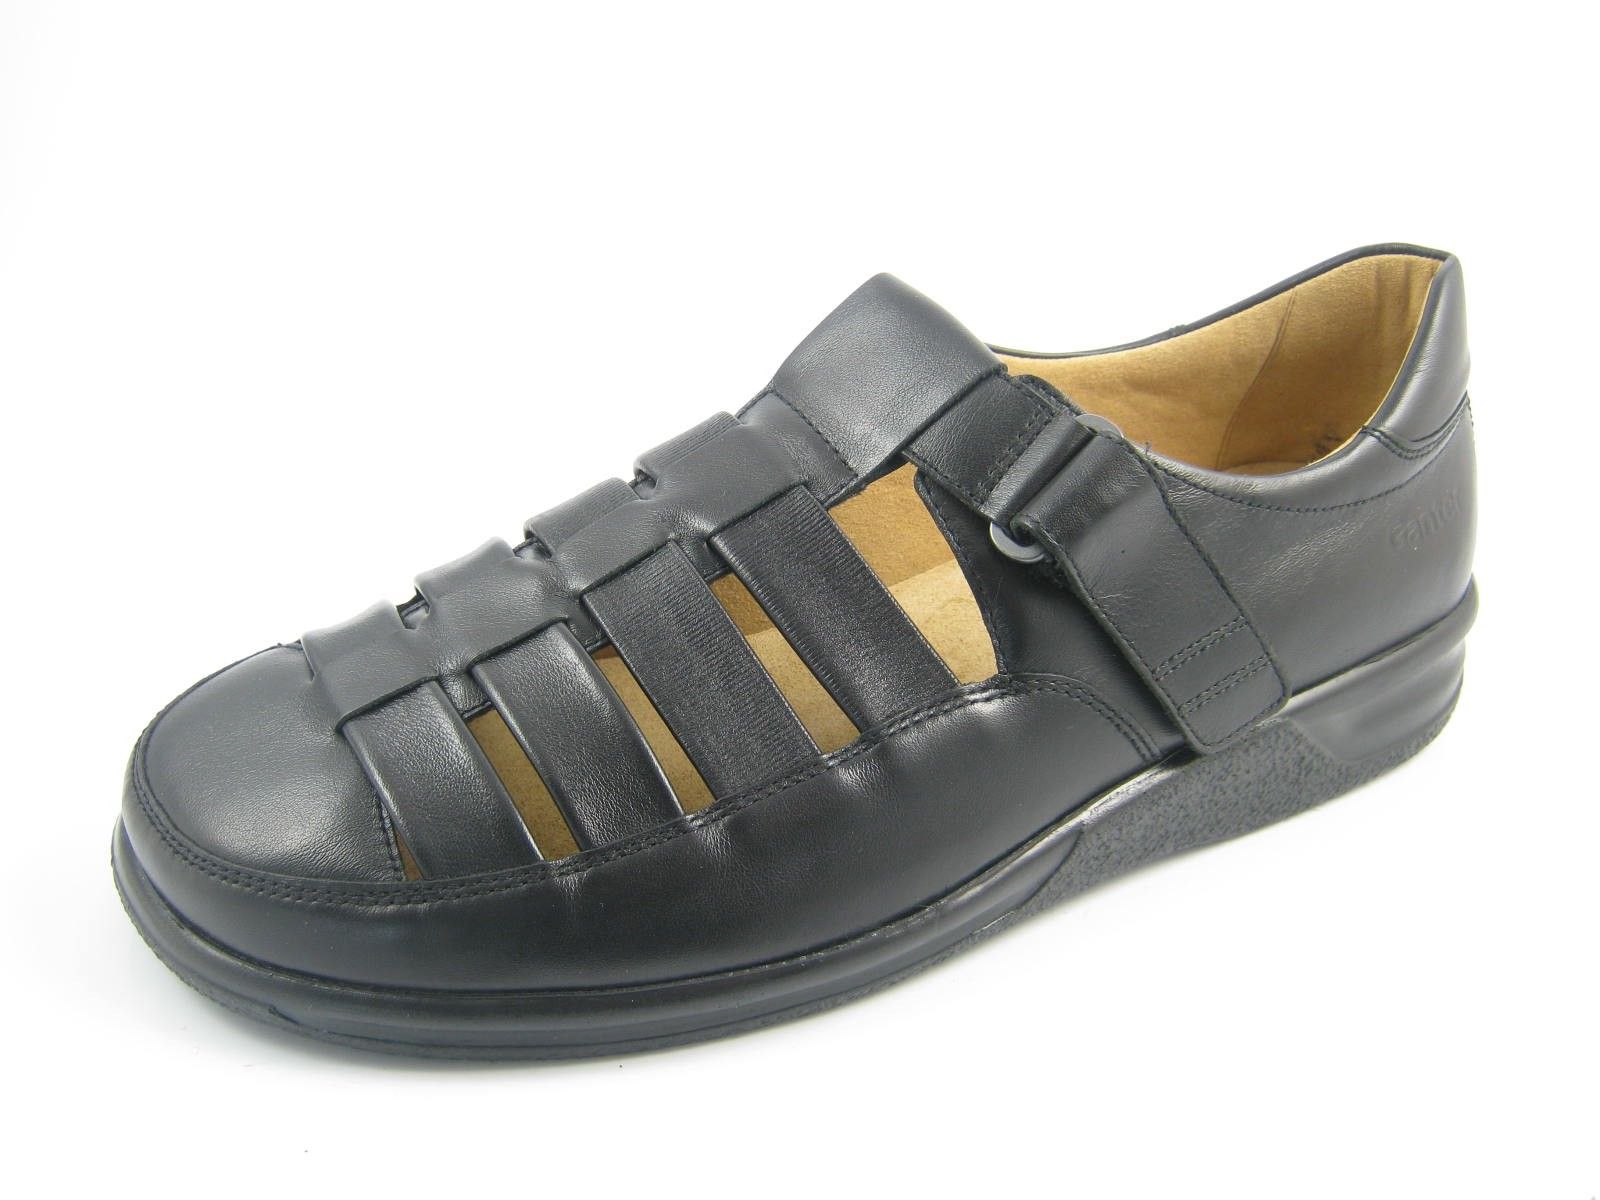 Schuh von Ganter, 11